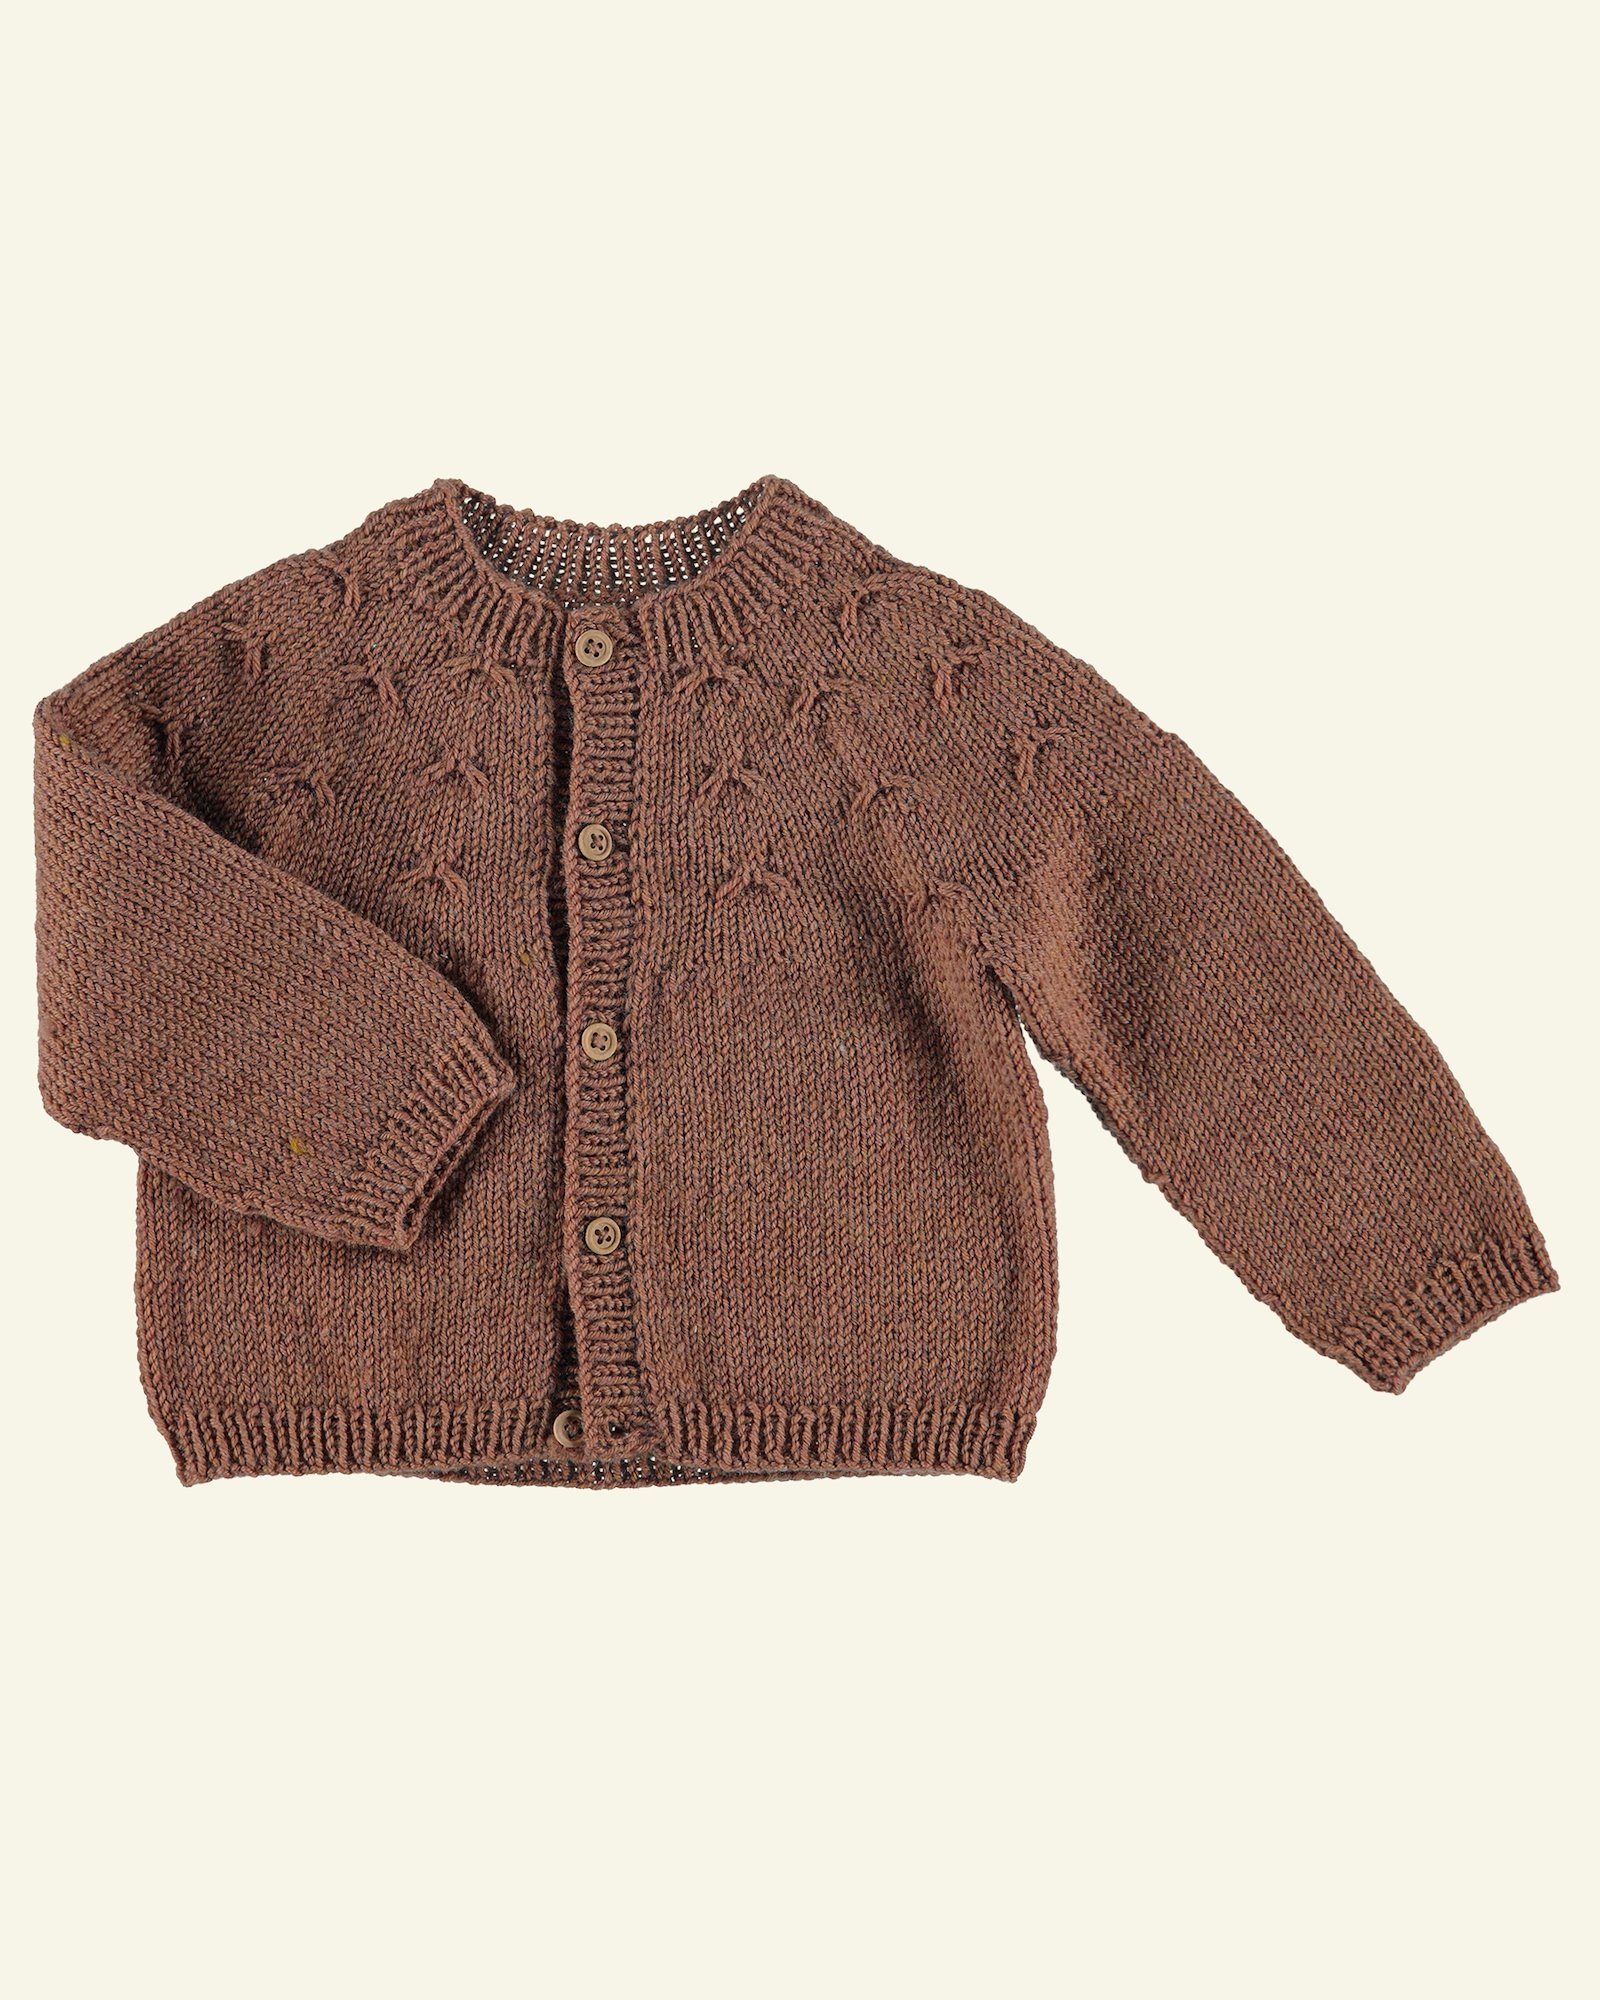 FRAYA knitting pattern – Nostalgia cardigan - Delicate FRAYA6056_image.png